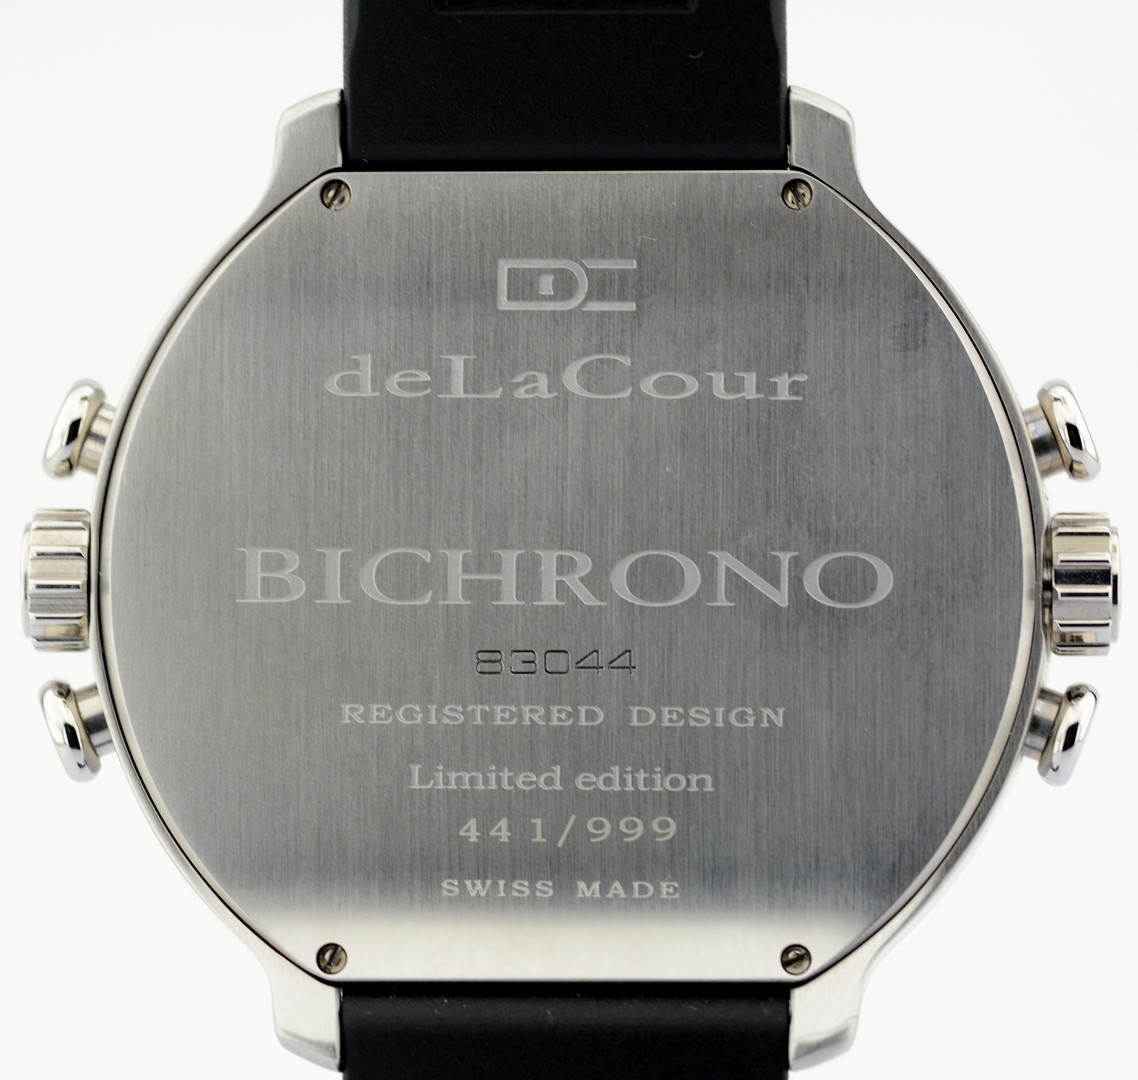 DeLaCour / Bichrono - Limited Edition - Unworn - Gentlemen's Steel Wristwatch - Image 6 of 10